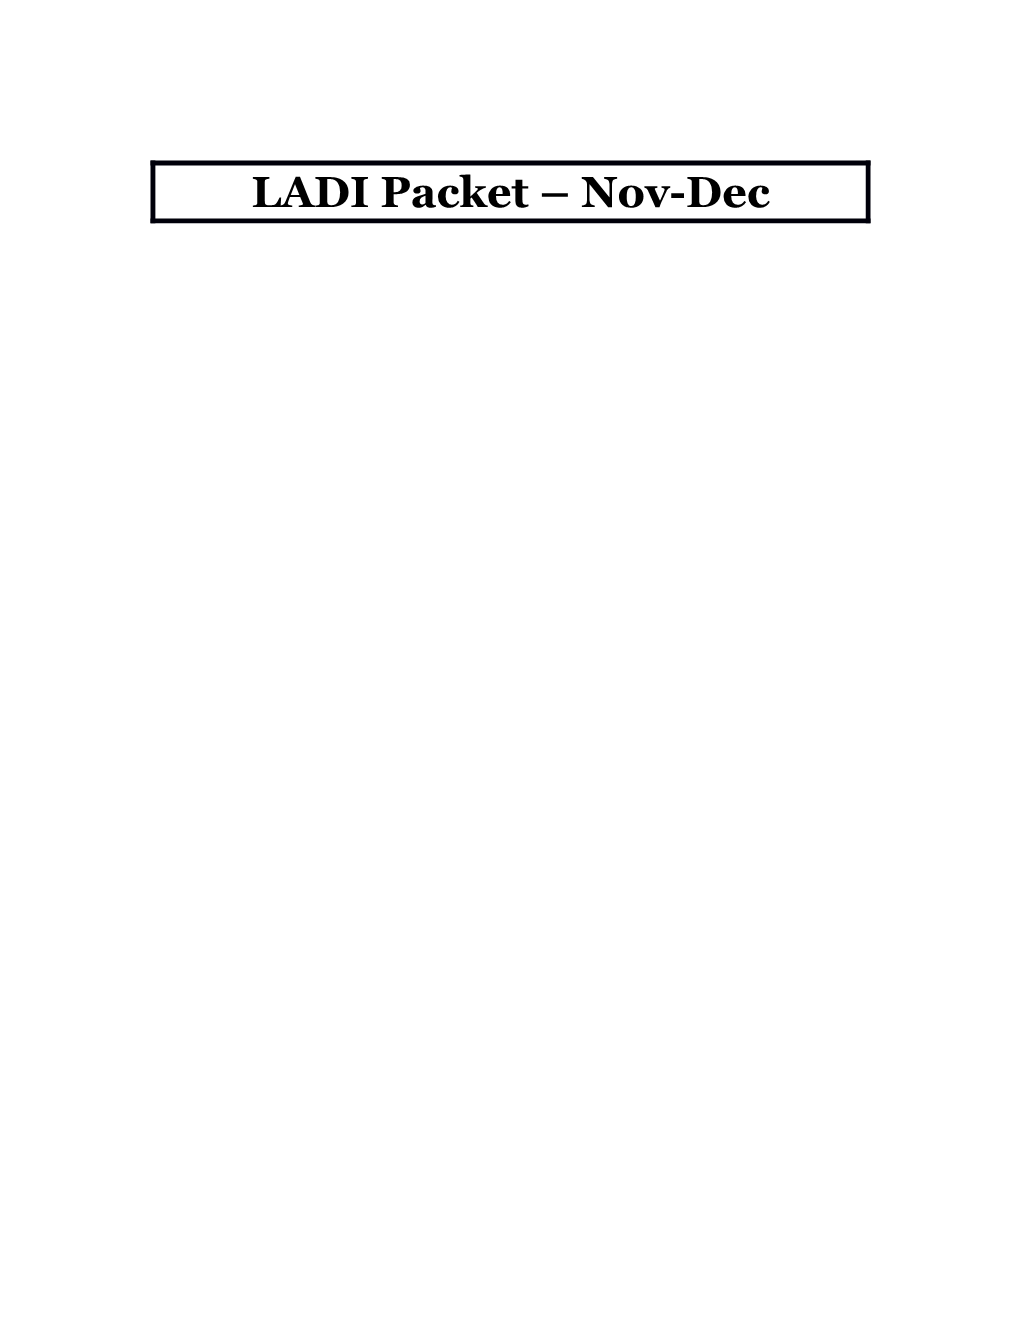 LADI Packet Nov-Dec